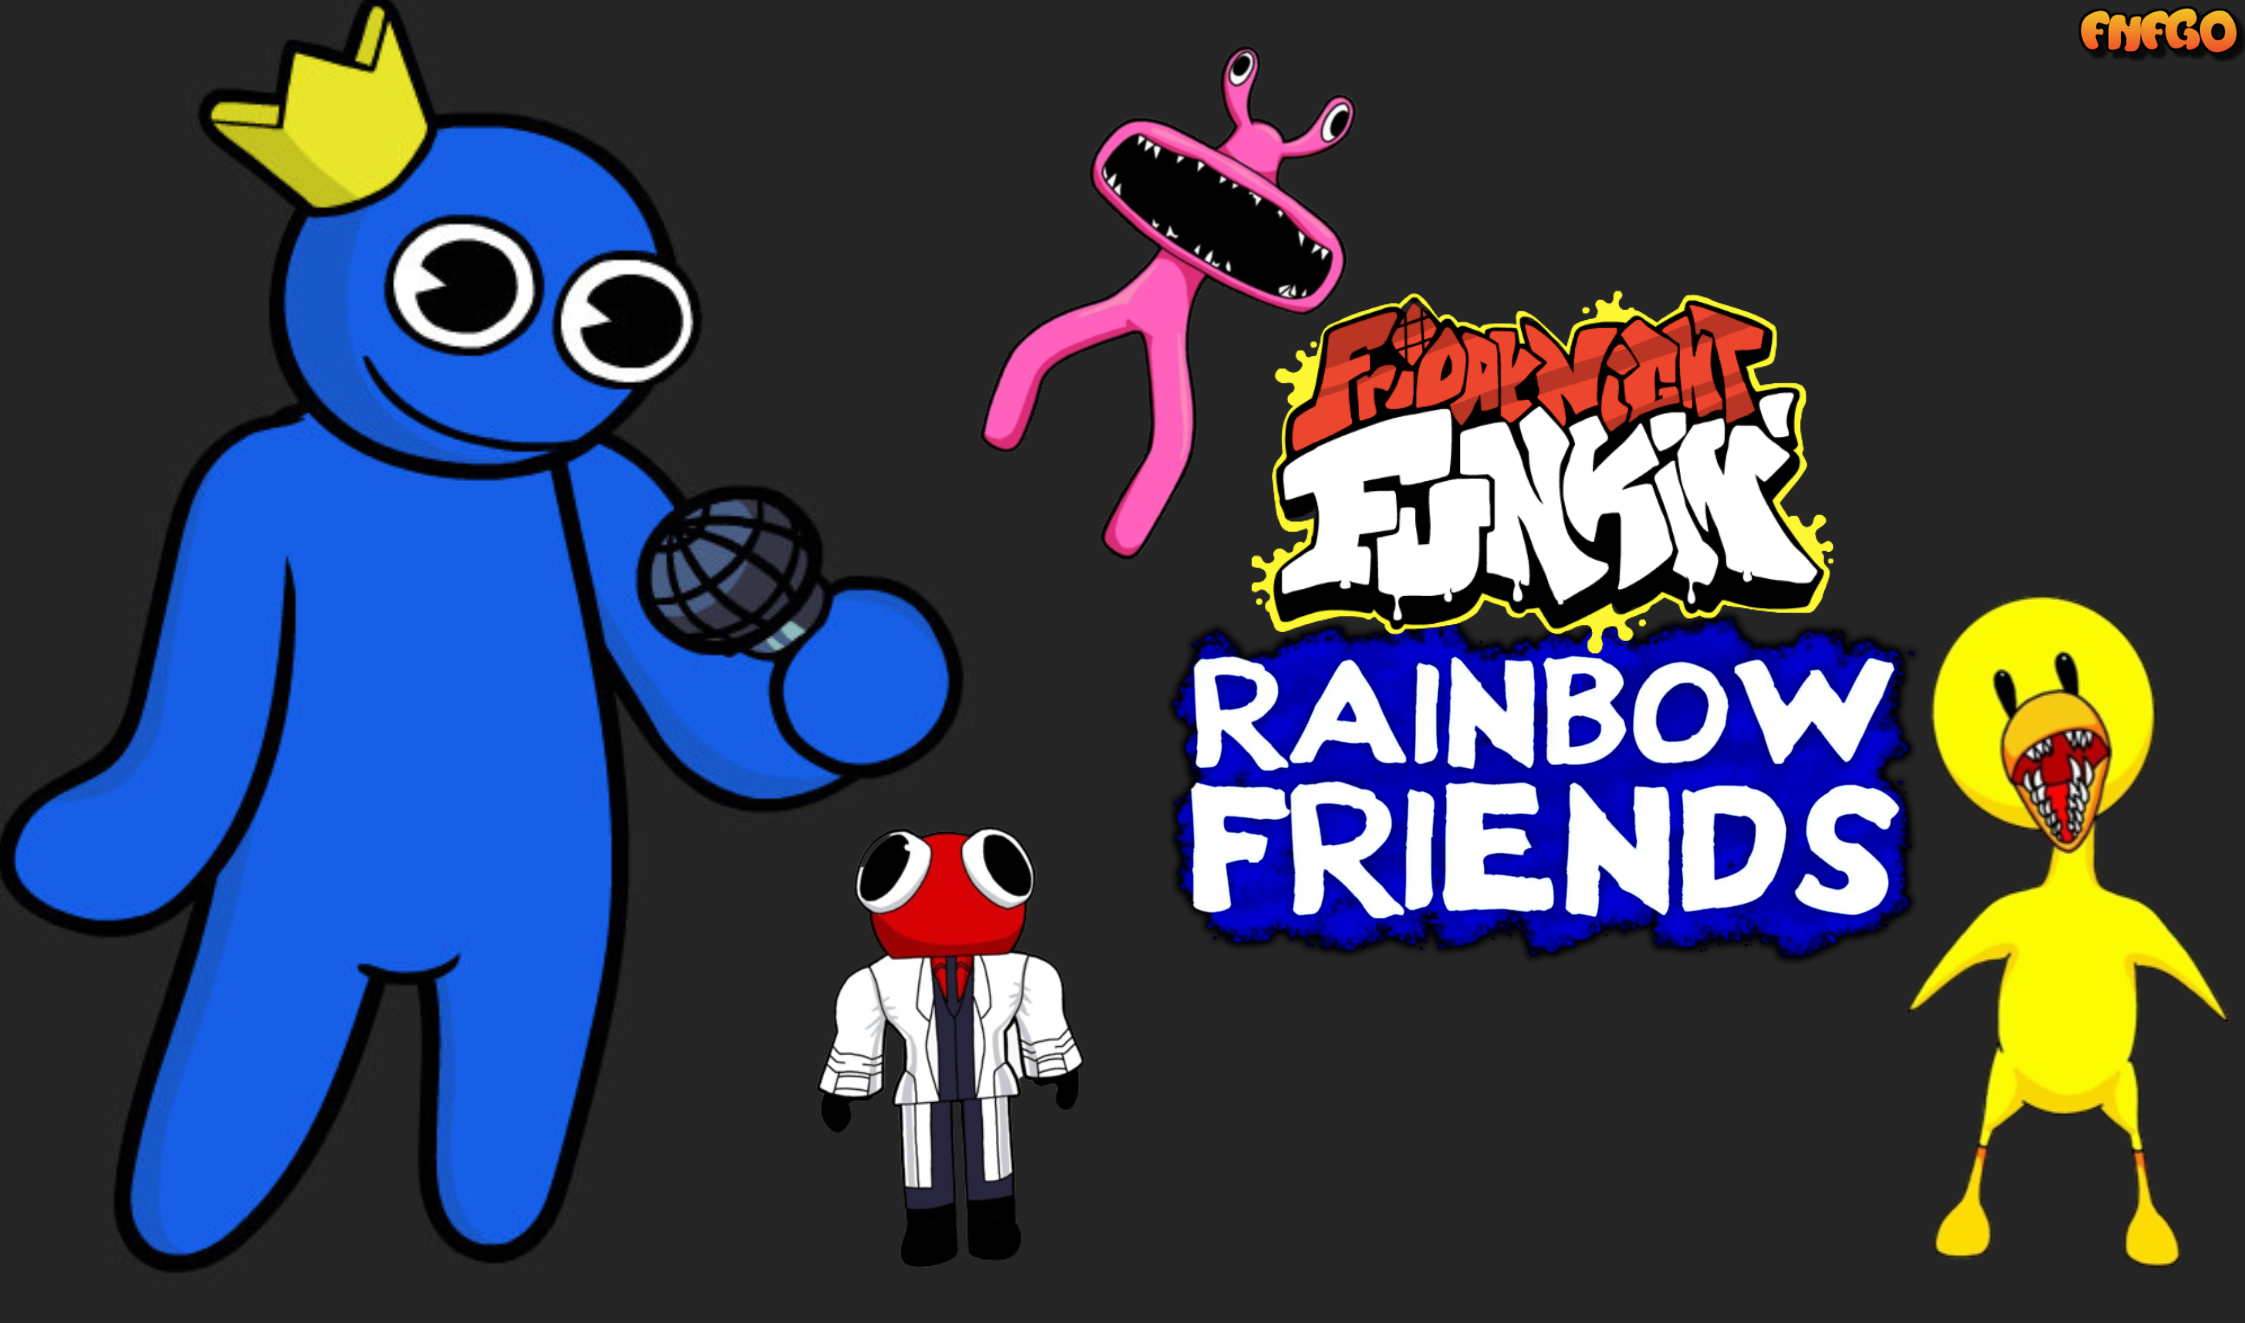 FNF Vs Rainbow Friends - Play FNF Vs Rainbow Friends On FNF - FNF